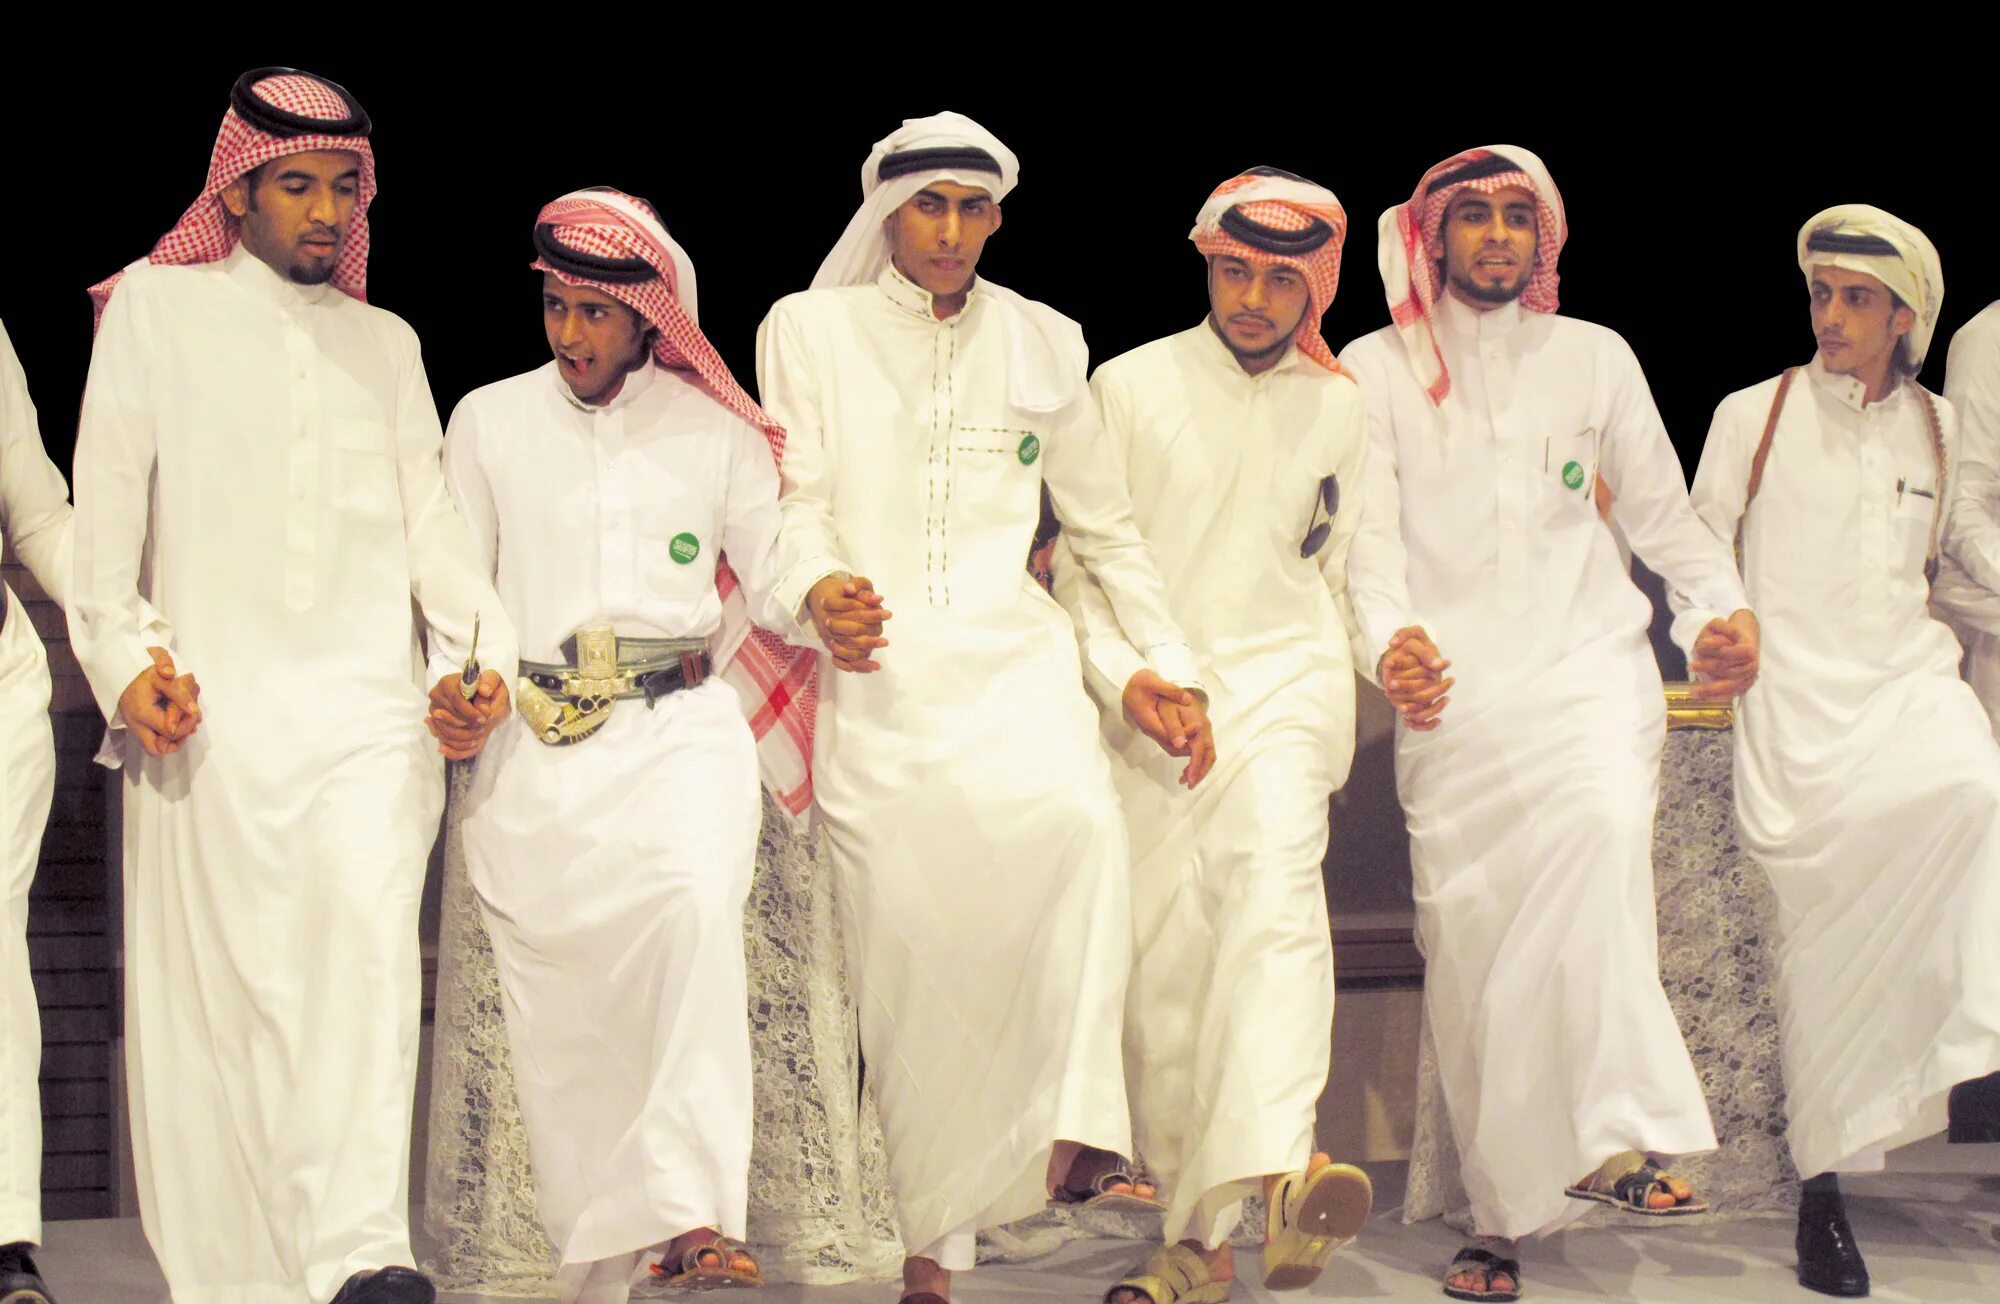 Арабская электронная группа. Национальный костюм Саудовской Аравии. Саудовская Аравия Национальная одежда. Саудовская Аравия нац костюм. Саудовская Аравия Национальная одежда мужчин.